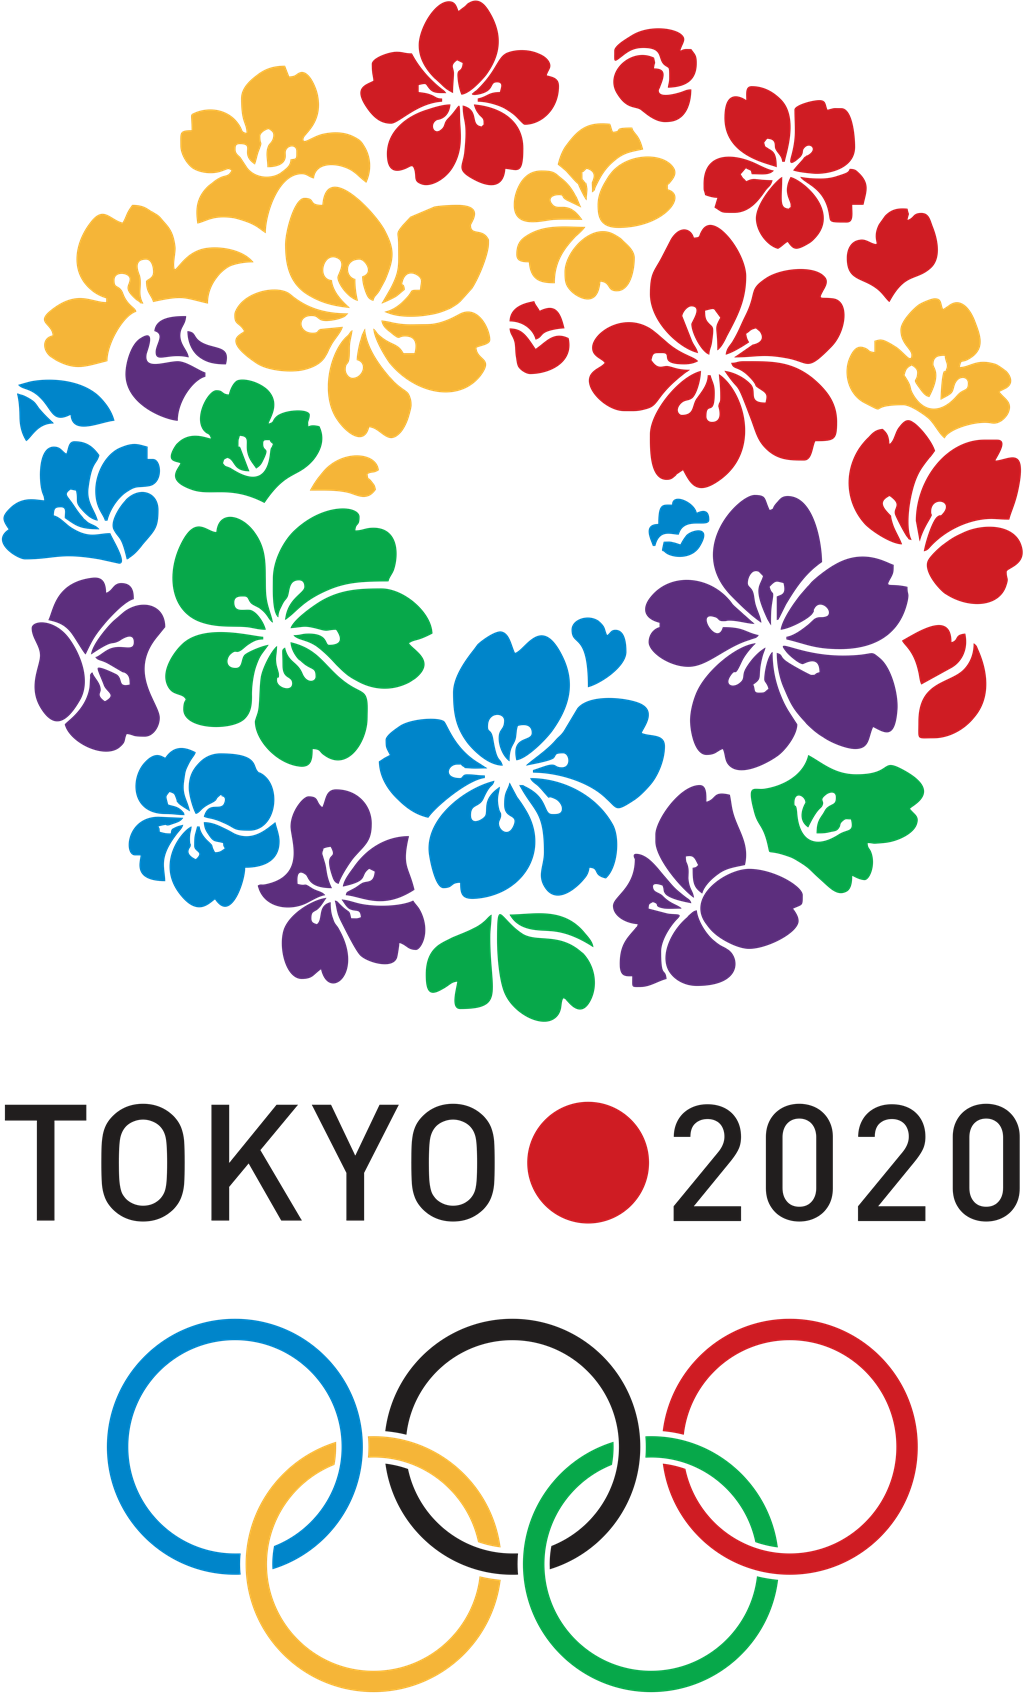 TOKYO 2020 OLYMPICS logotype, transparent .png, medium, large